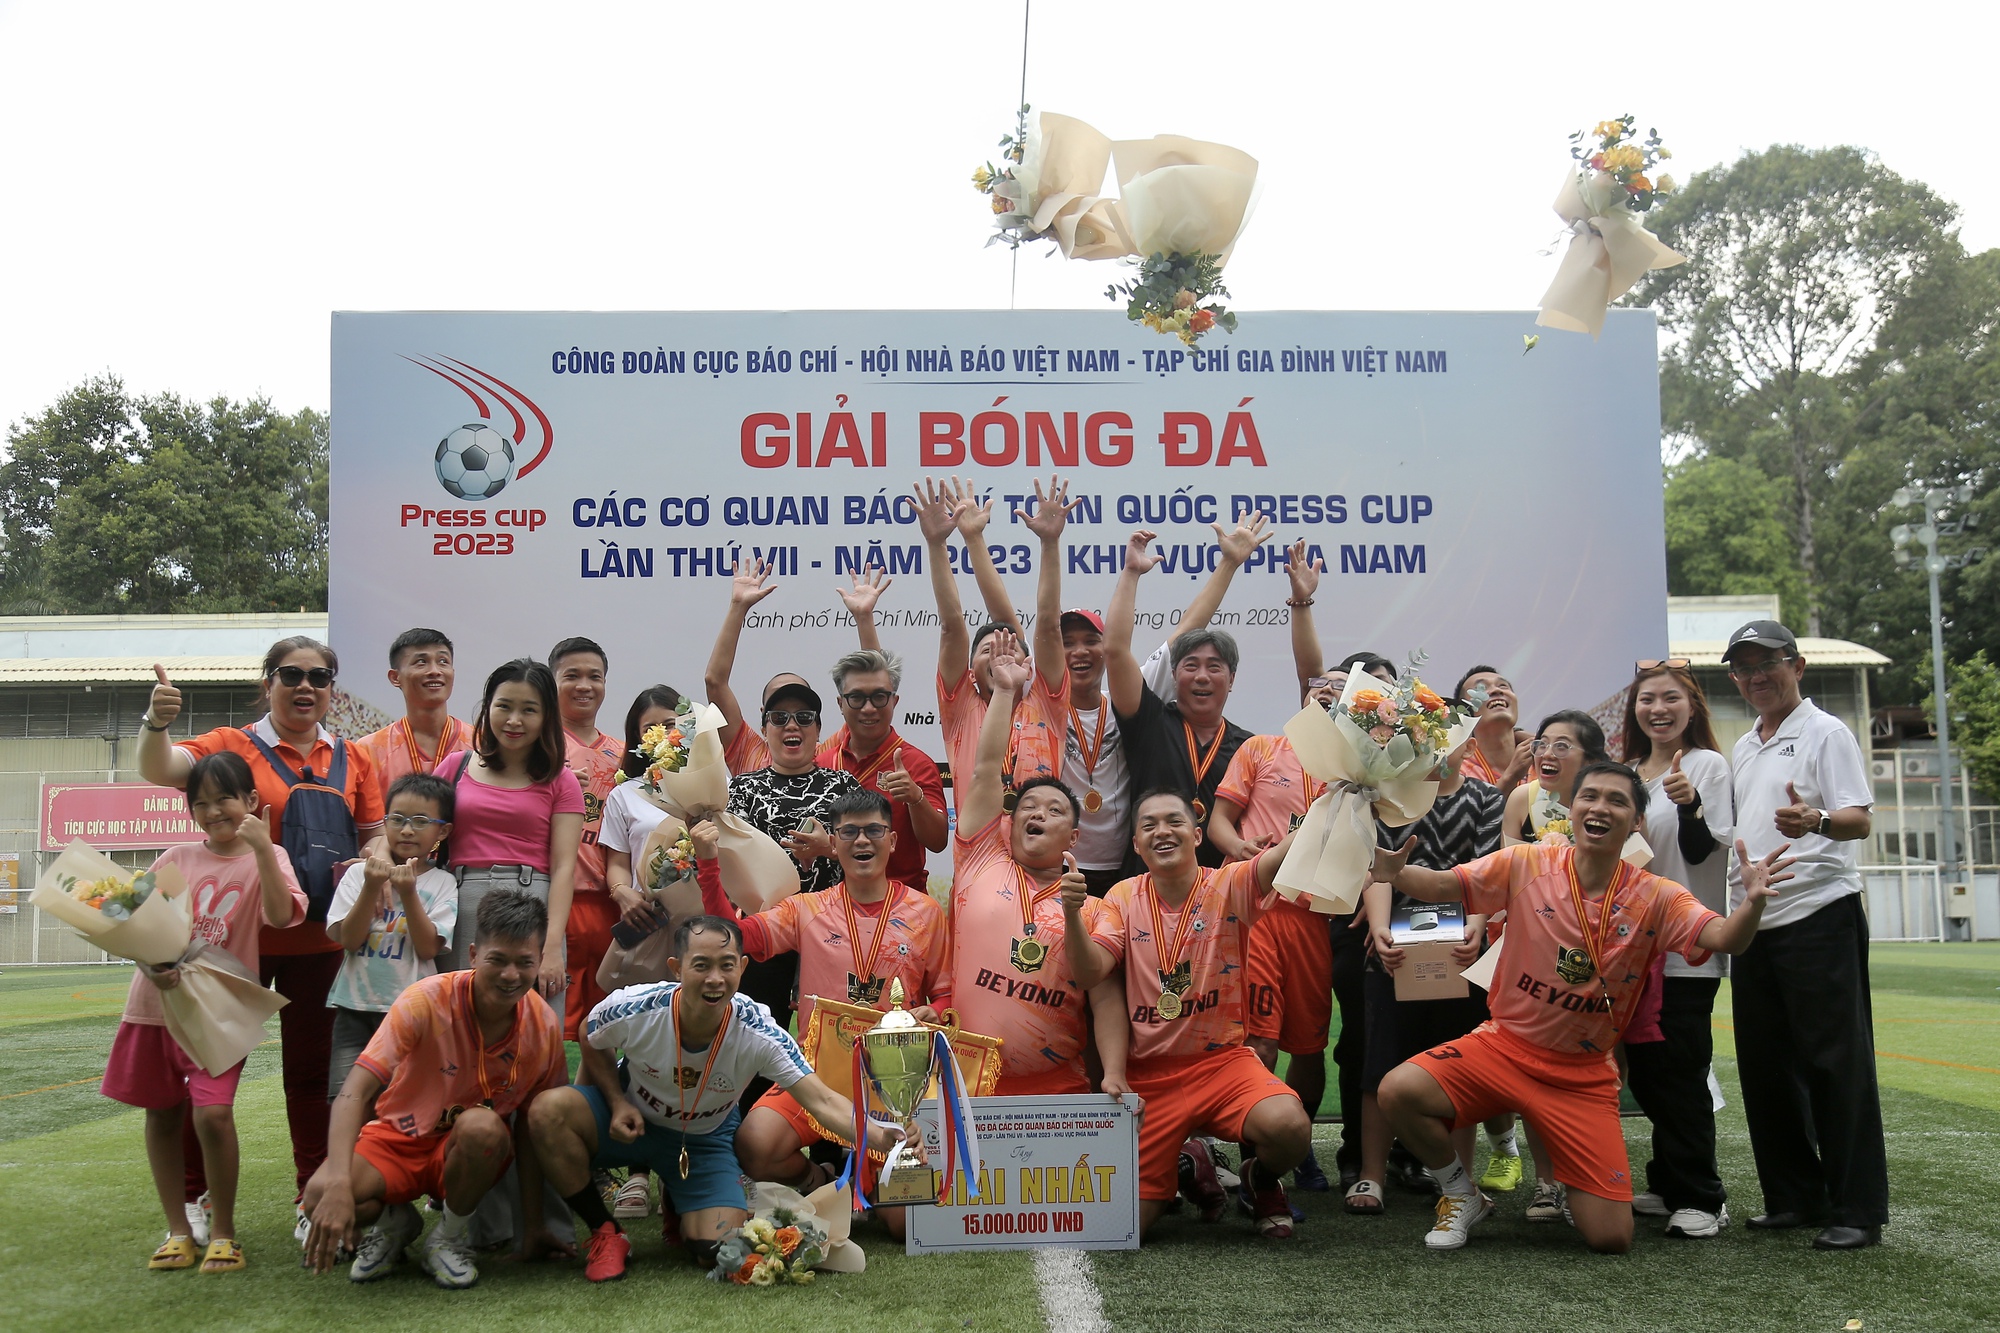 CLB Phóng viên Đời sống - Xã hội vô địch Giải bóng đá Press Cup 2023 khu vực phía Nam - Ảnh 2.